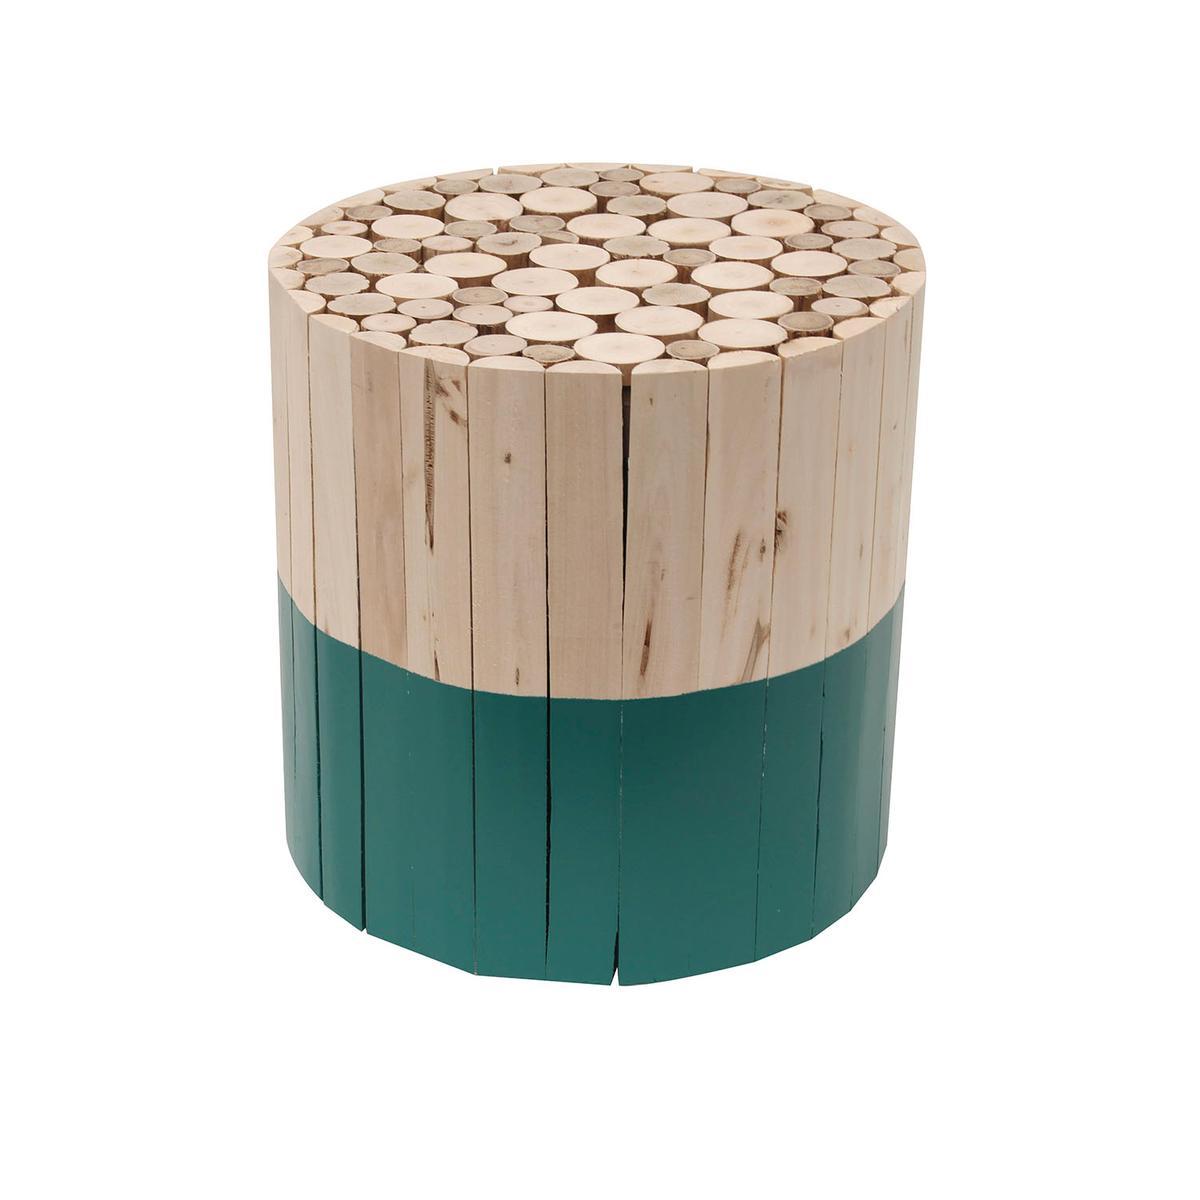 Tabouret rond en bois bicolore - Différents modèles - ø 30 x H 30 cm - Vert, beige - HOME DECO FACTORY